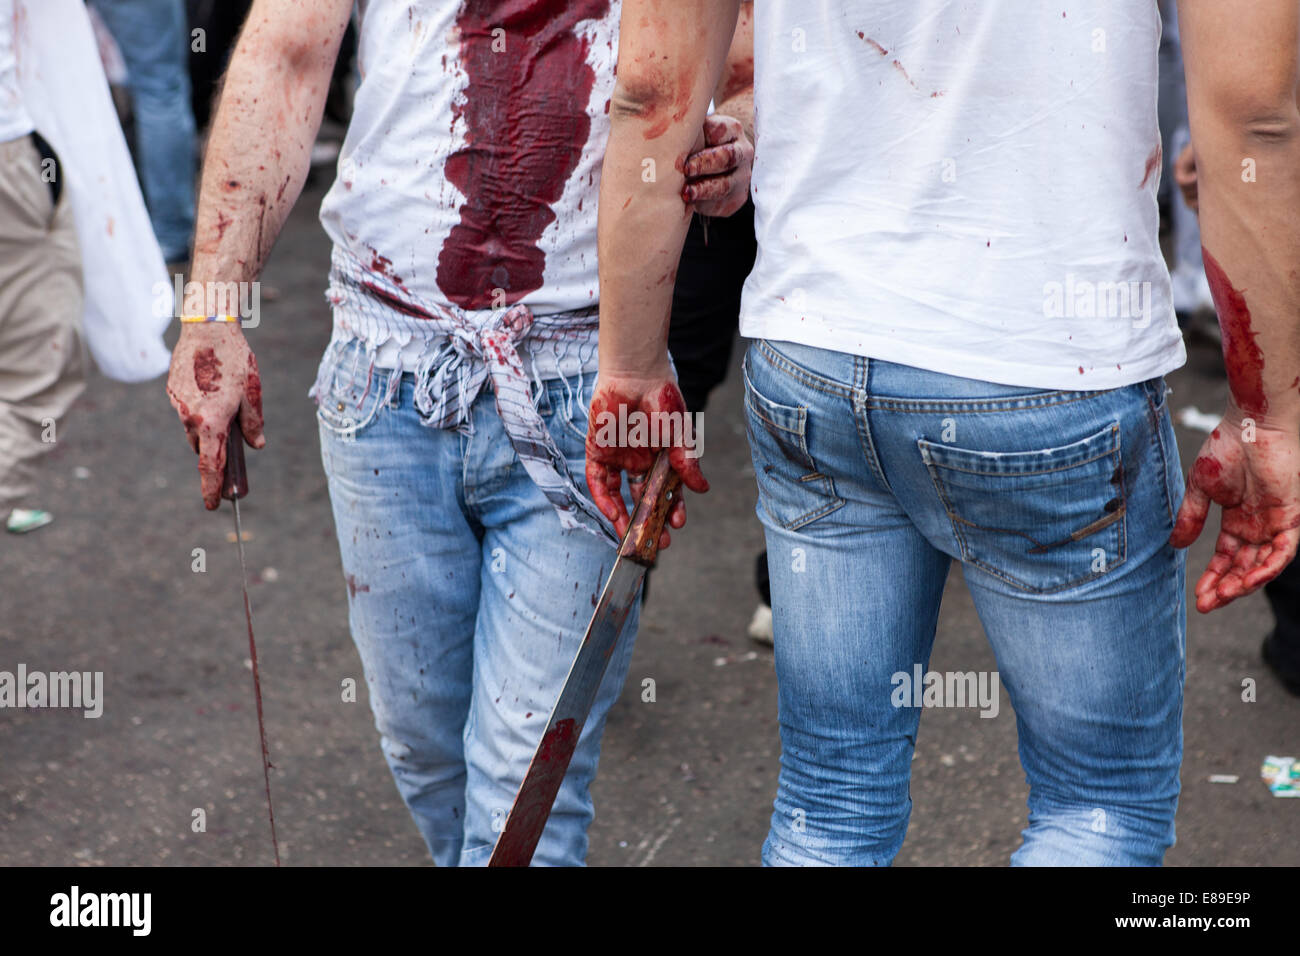 Les hommes musulmans chiites, couverts dans leur propre sang, transportant des couteaux, dans les rues de Nabatieh, Liban, au cours de la journée d'Ashoura. Banque D'Images